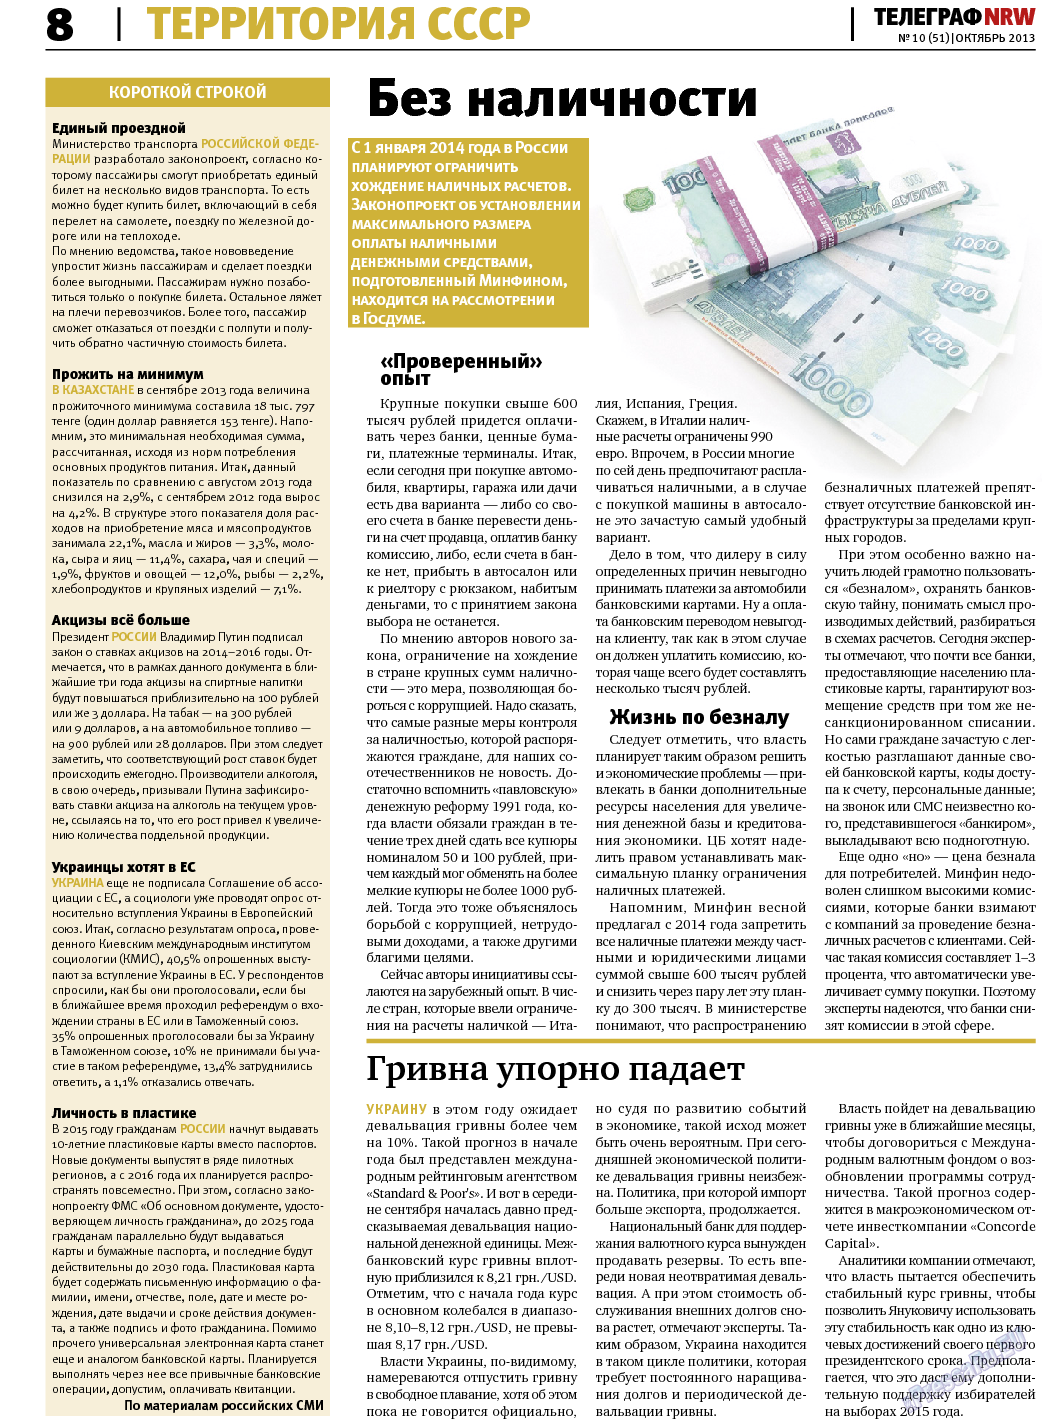 Телеграф NRW (газета). 2013 год, номер 10, стр. 8